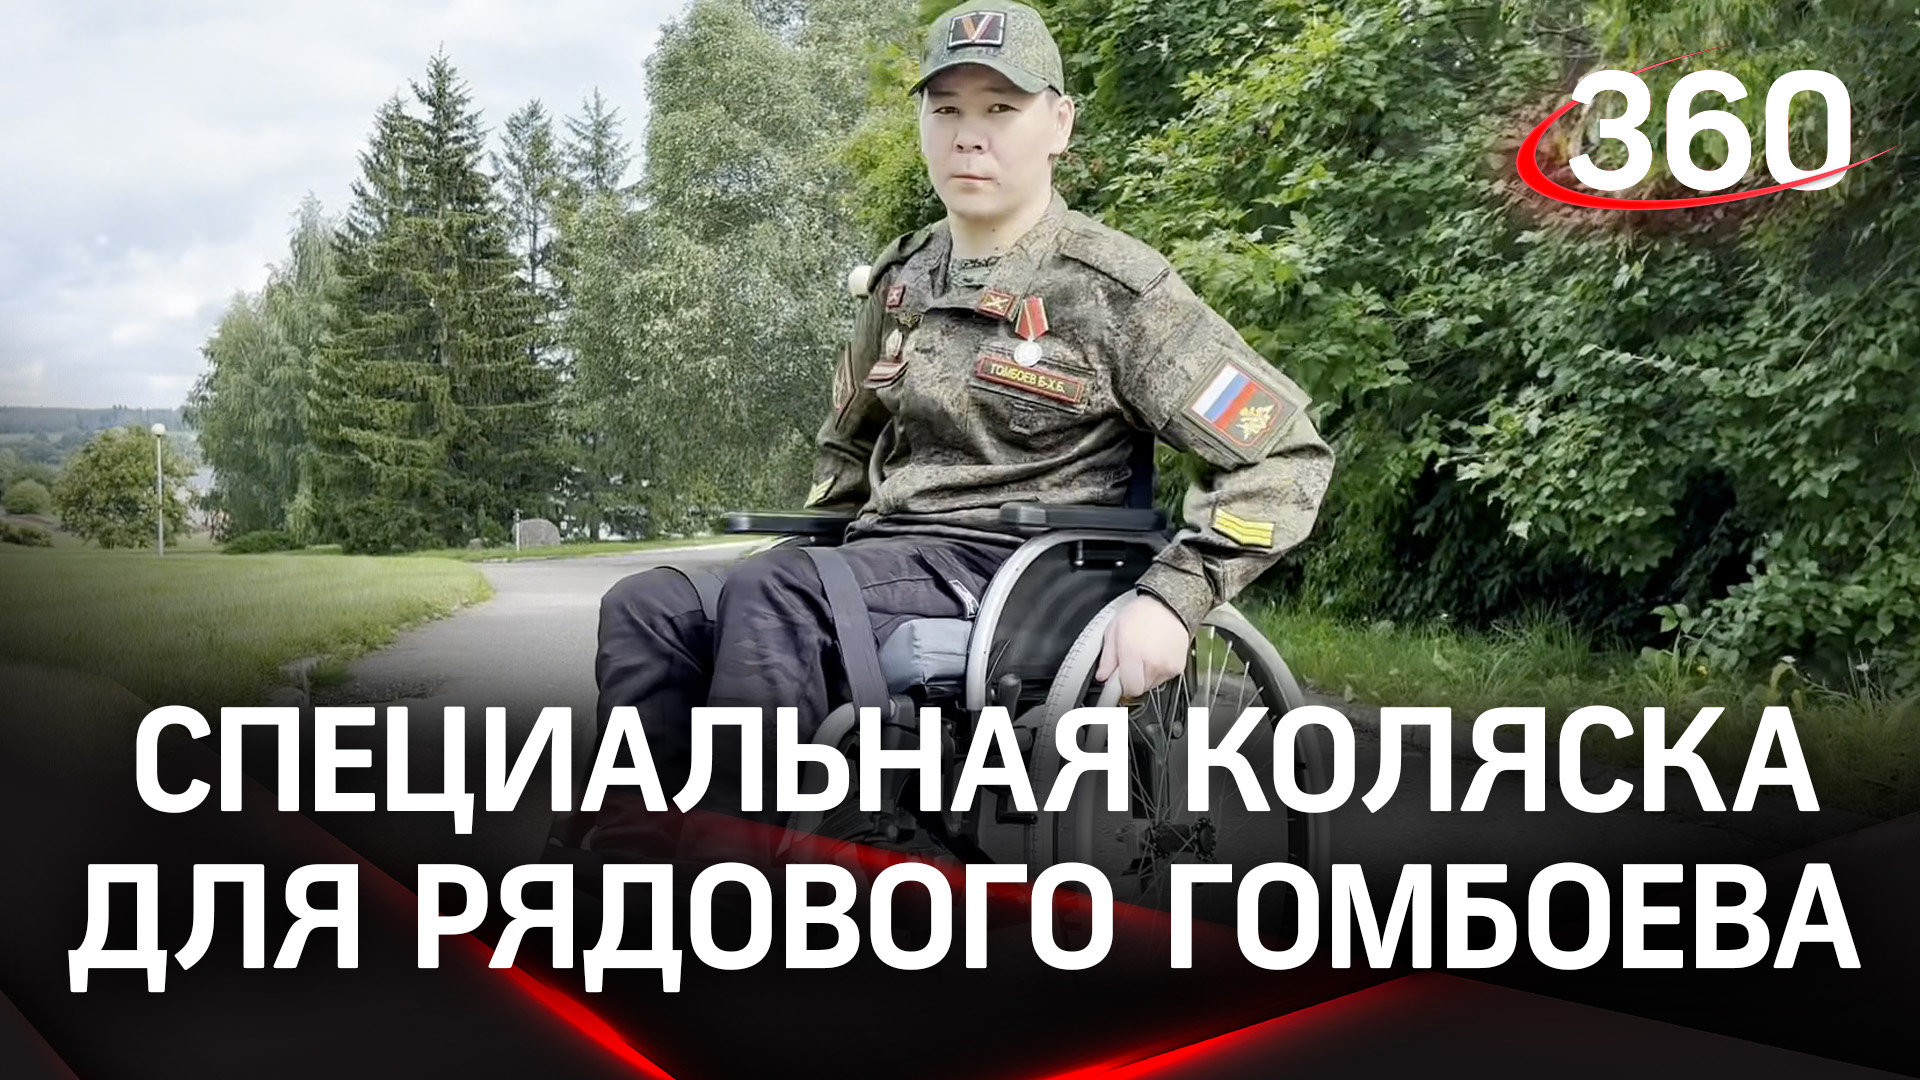 Бойцу сво создали специальную коляску в московской области